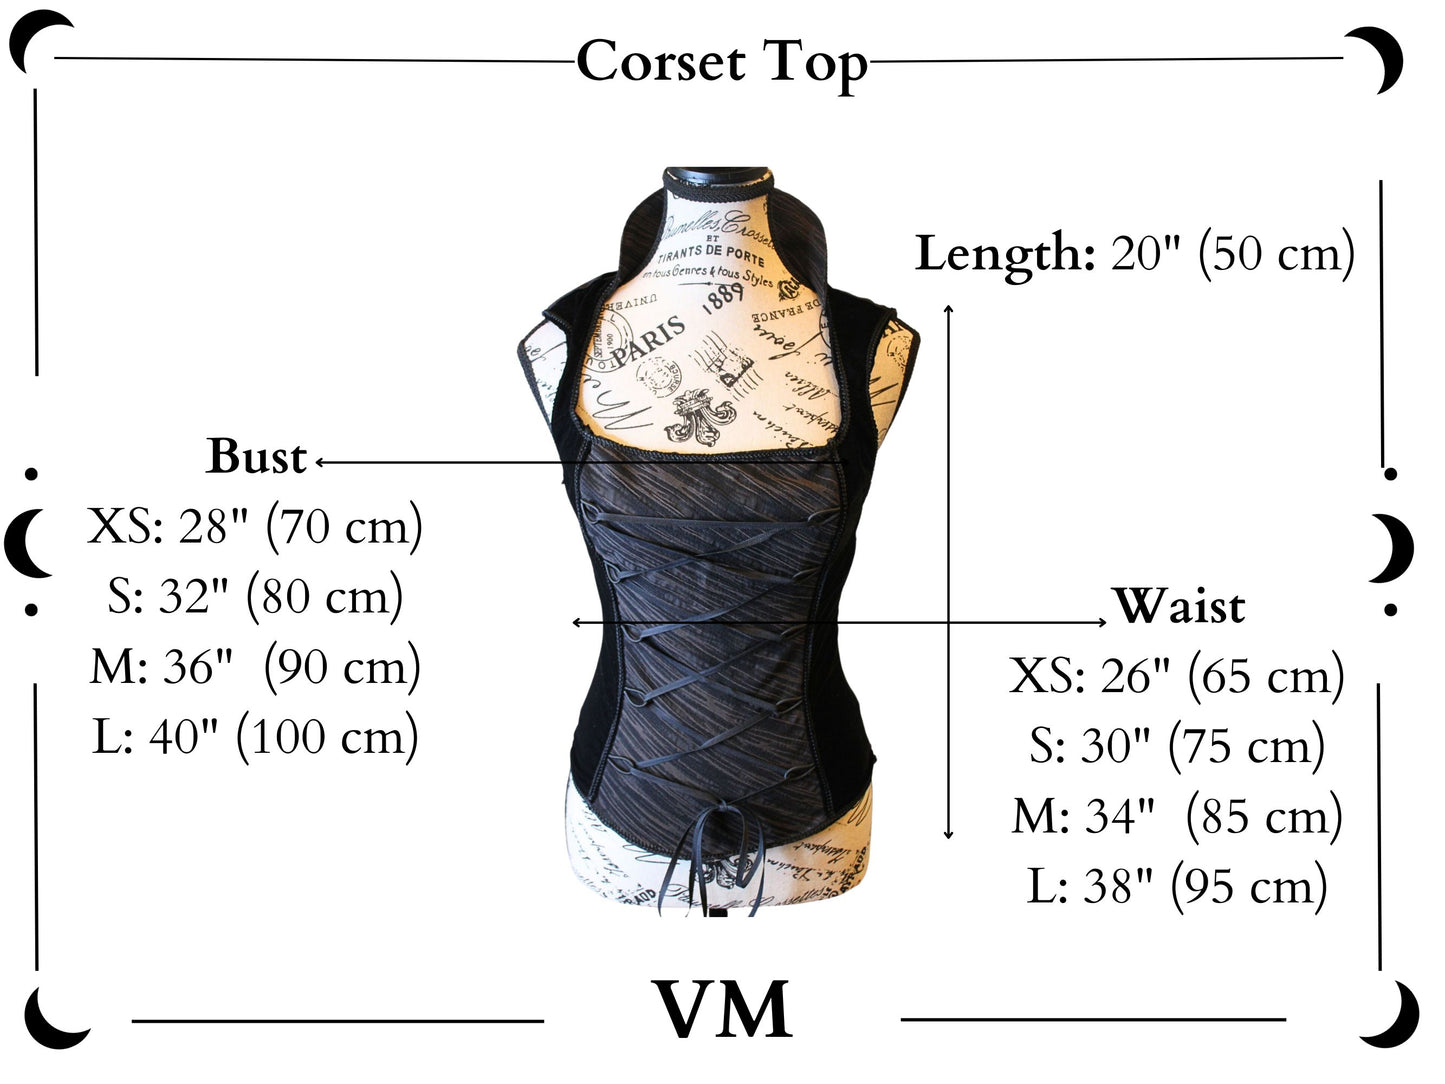 The VM Corset Top